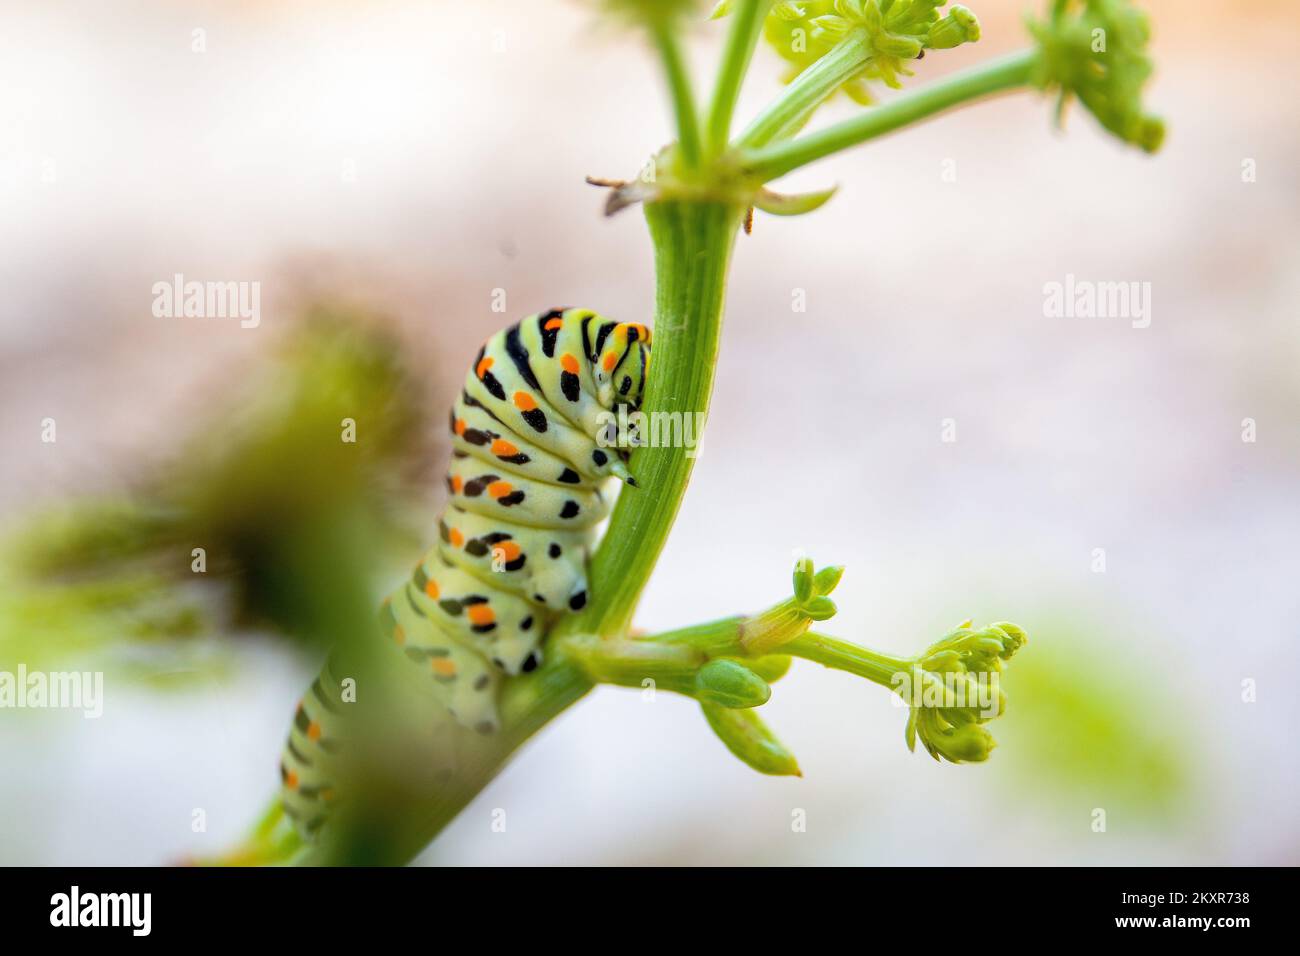 La oruga (Papilio machaon L.) de la mariposa legalmente protegida  Swallowtail se ve disfrutando de los jugos de la hierba Motra. Las orugas  de cola de golondrina tienen unos 4 cm de